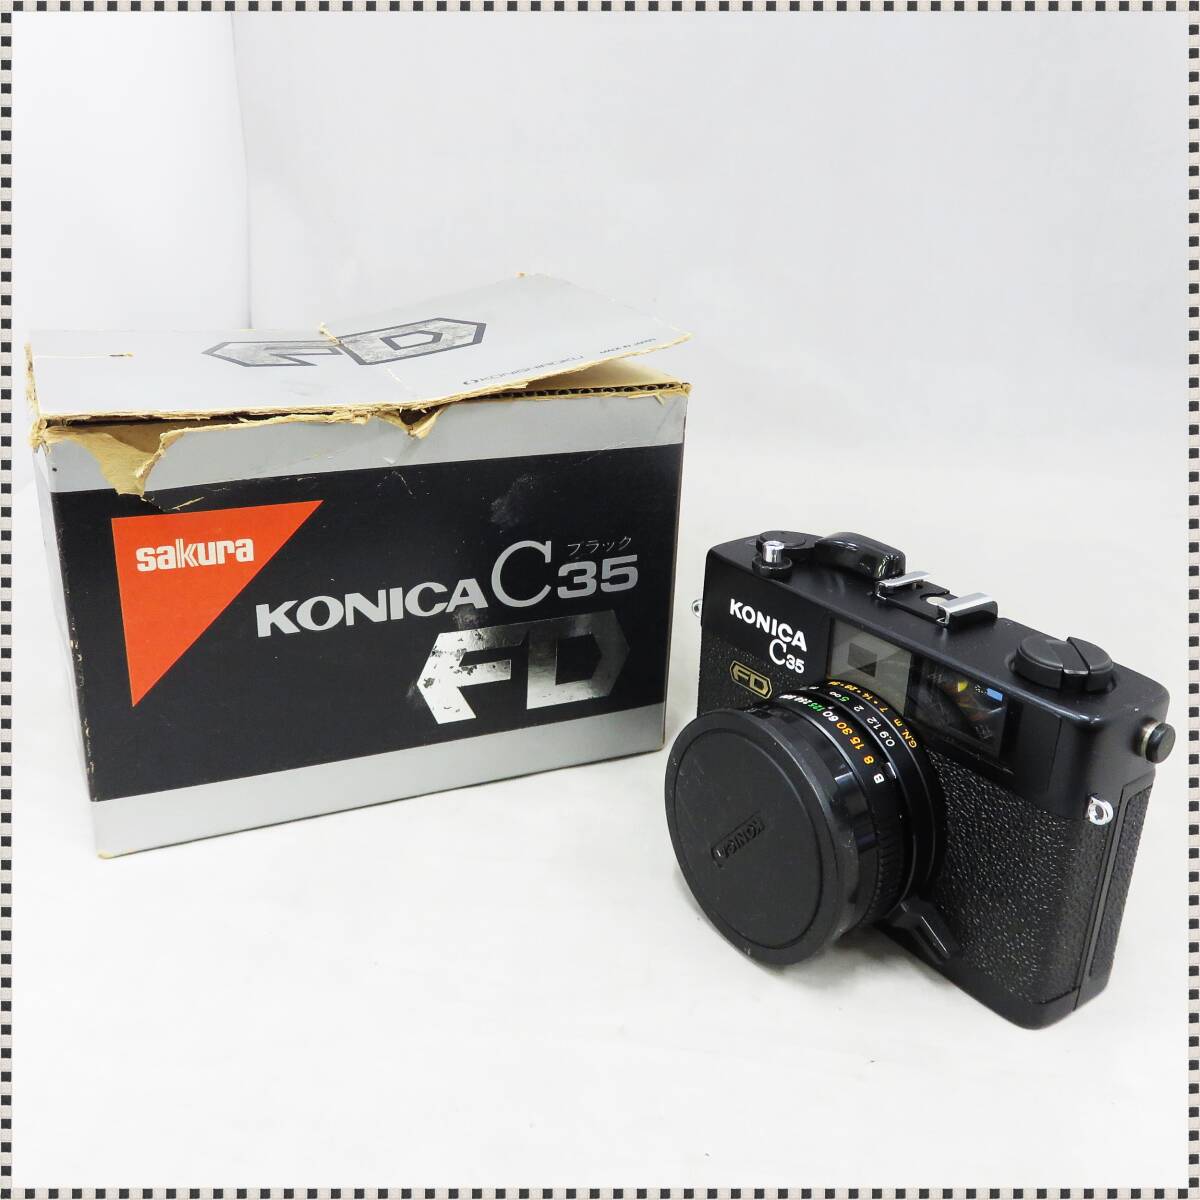 【 シャッターOK 】 コニカ C35 FD ブラック HEXANON 38mm f/1.8 レンジファインダー コンパクトフィルムカメラ Konica HA032202_画像2